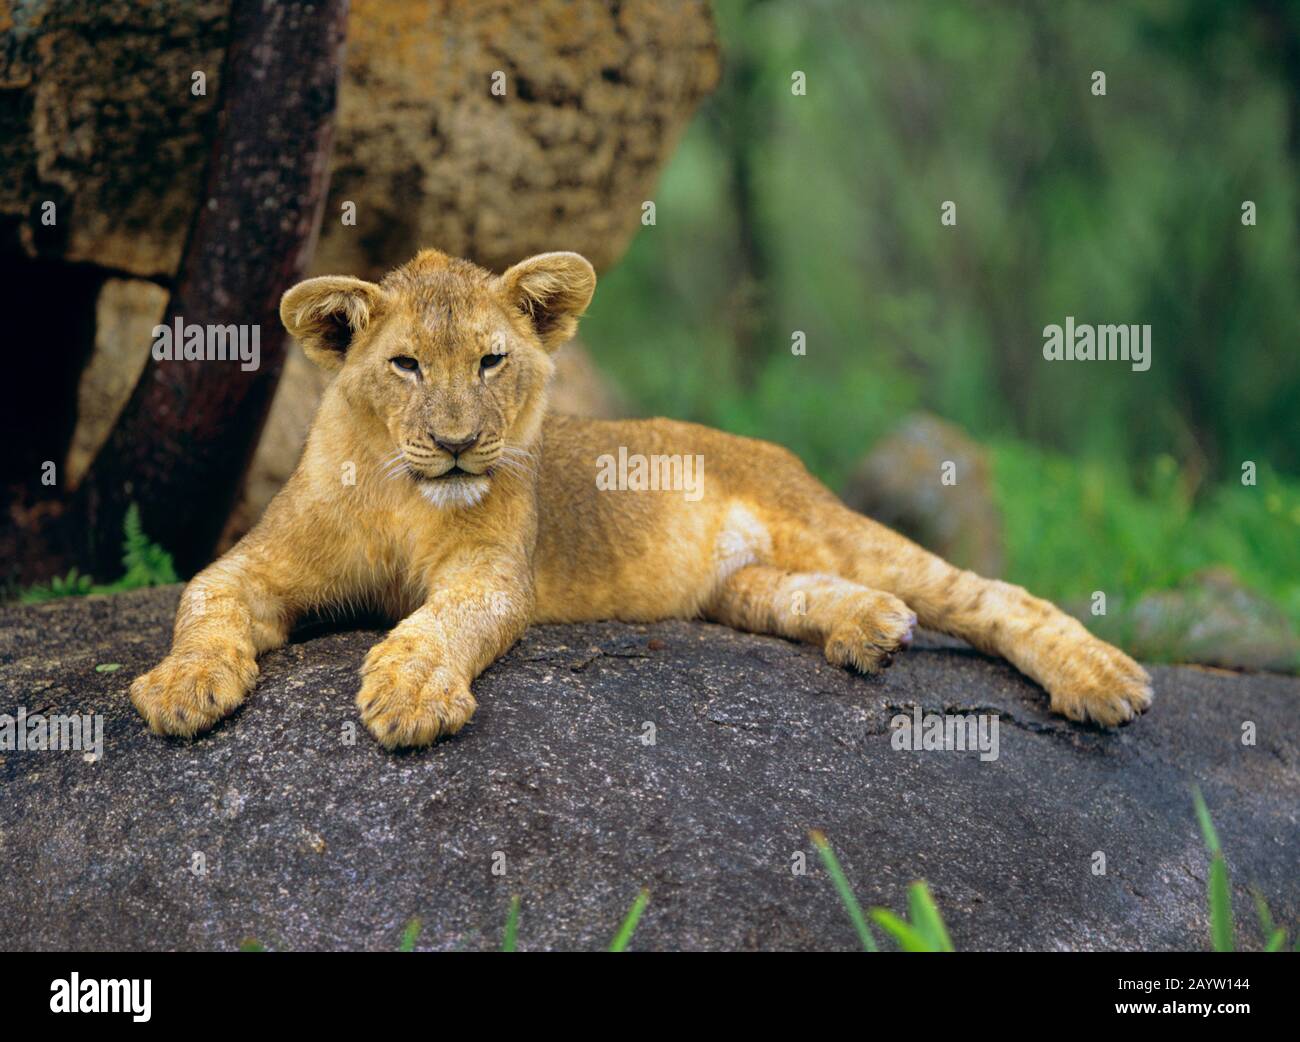 León (Panthera leo), león joven descansando en una roca, África Foto de stock